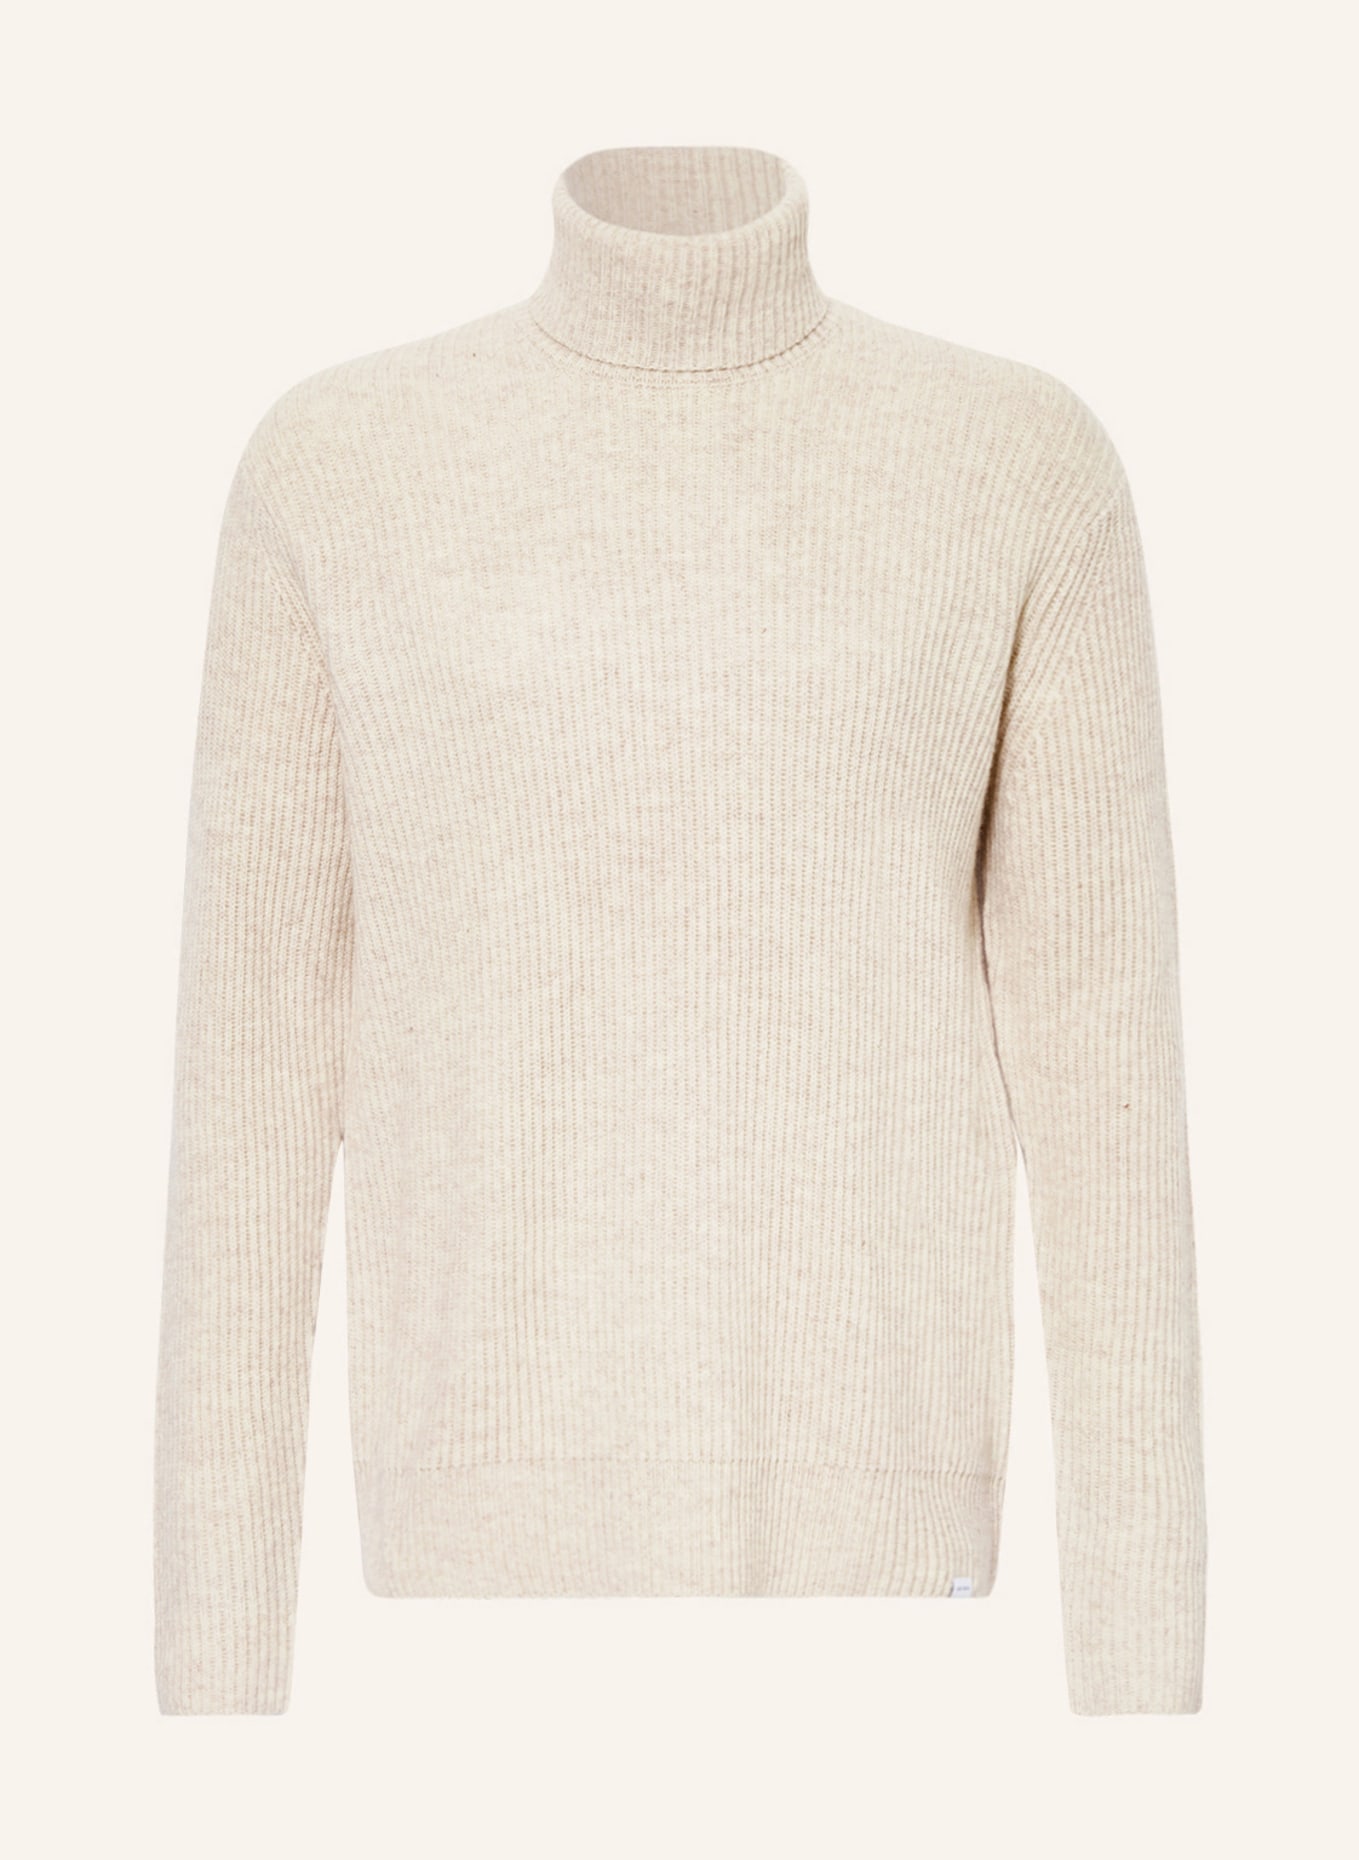 LES DEUX Turtleneck sweater EDDIE made of merino wool, Color: BEIGE (Image 1)